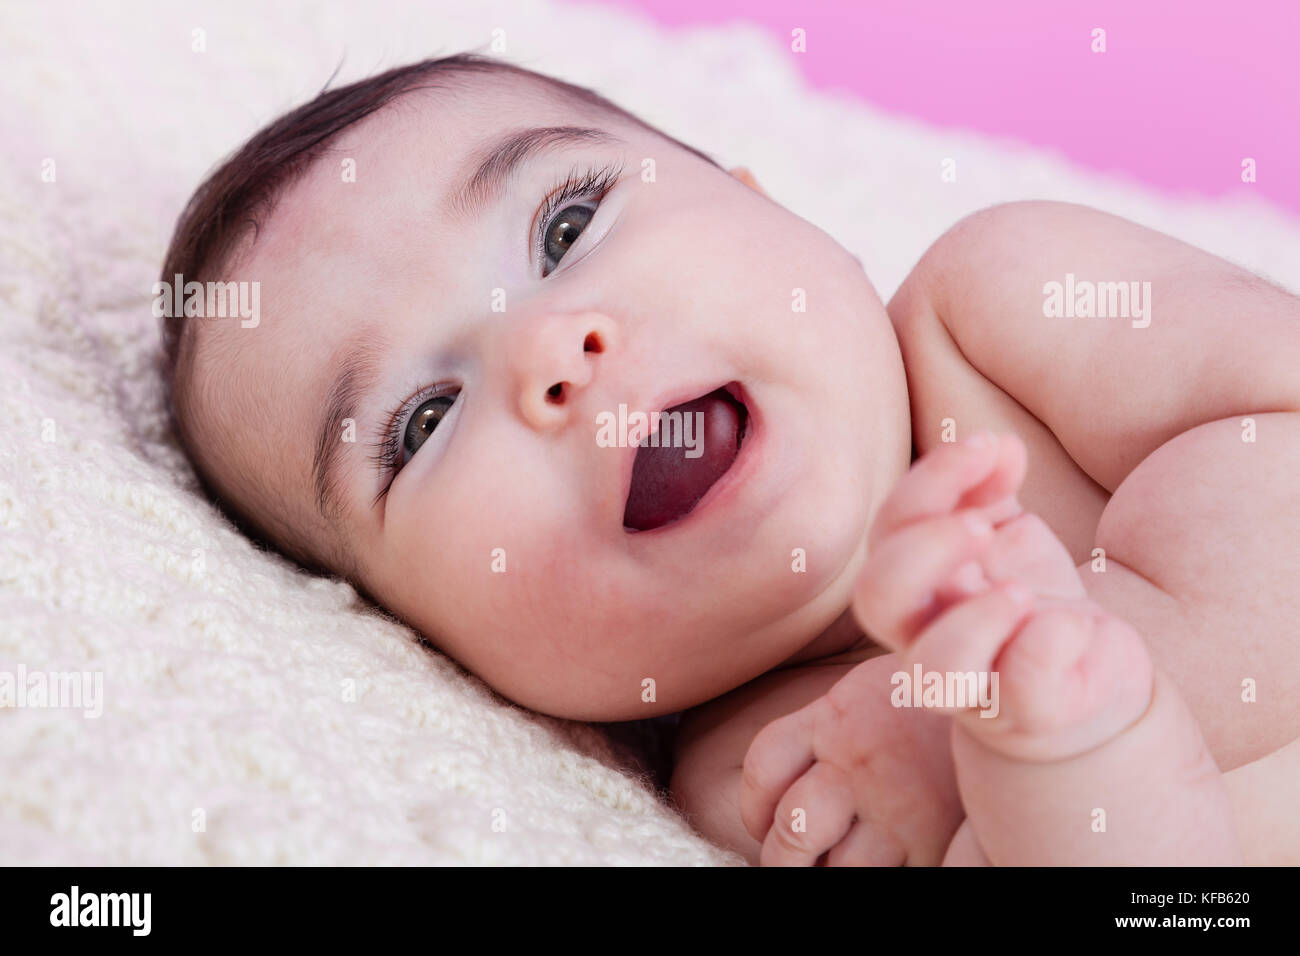 Mignon, joli, heureux, chubby et sourire portrait de fille de bébé, riant avec un grand sourire. Nu ou nu sur une couverture moelleuse. Quatre mois Banque D'Images